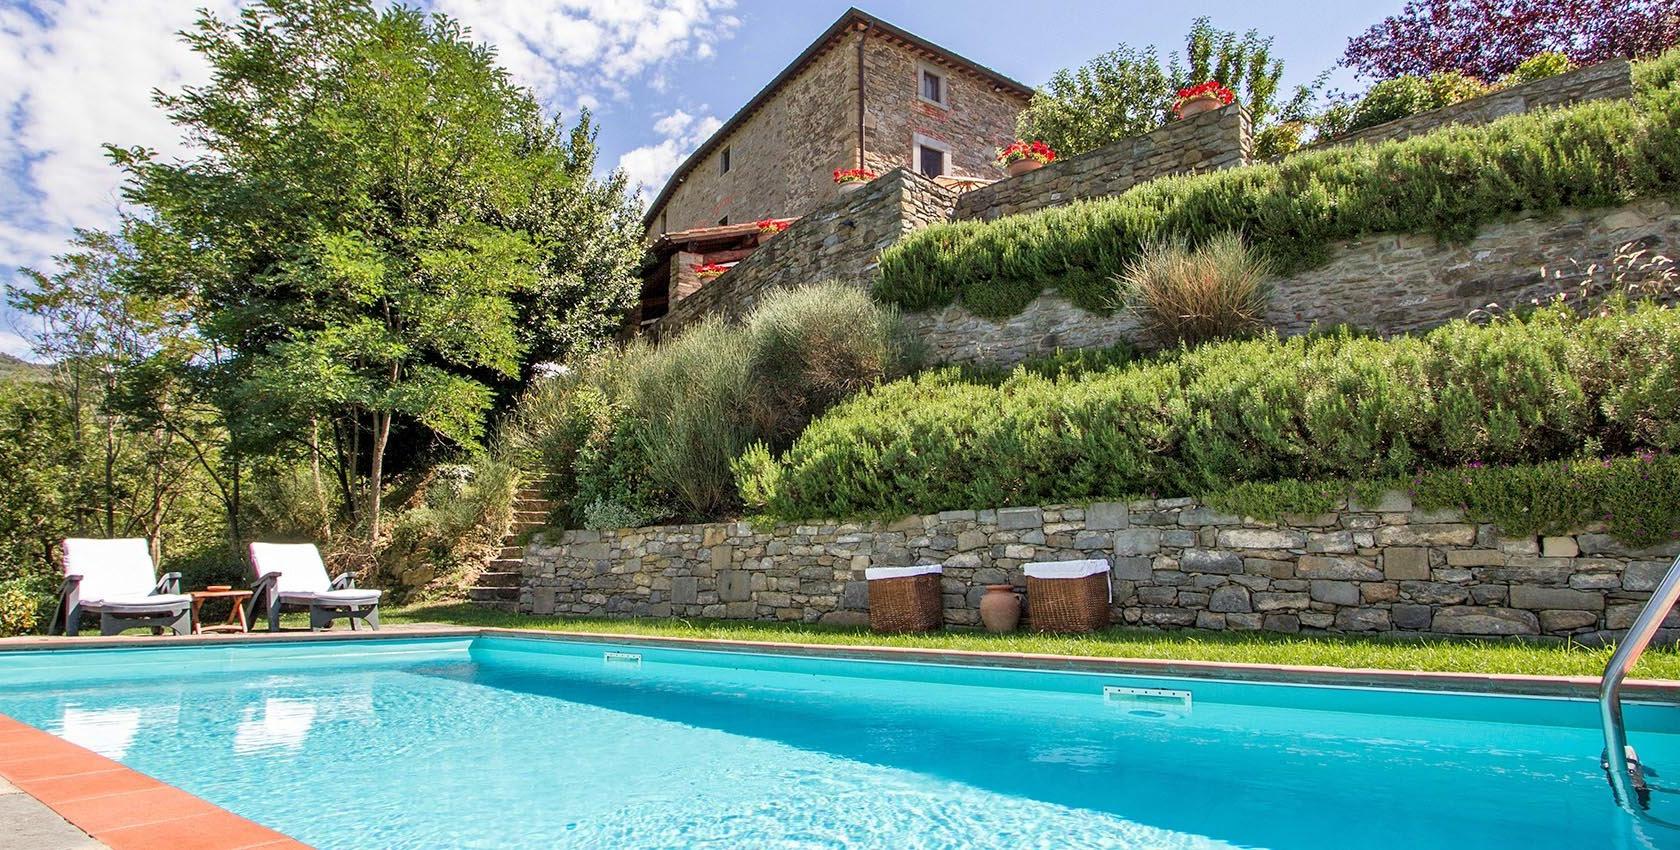 Toscana Immobiliare - Complesso immobiliare con borgo e casali in provincia di Arezzo, Castiglion Fiorentino